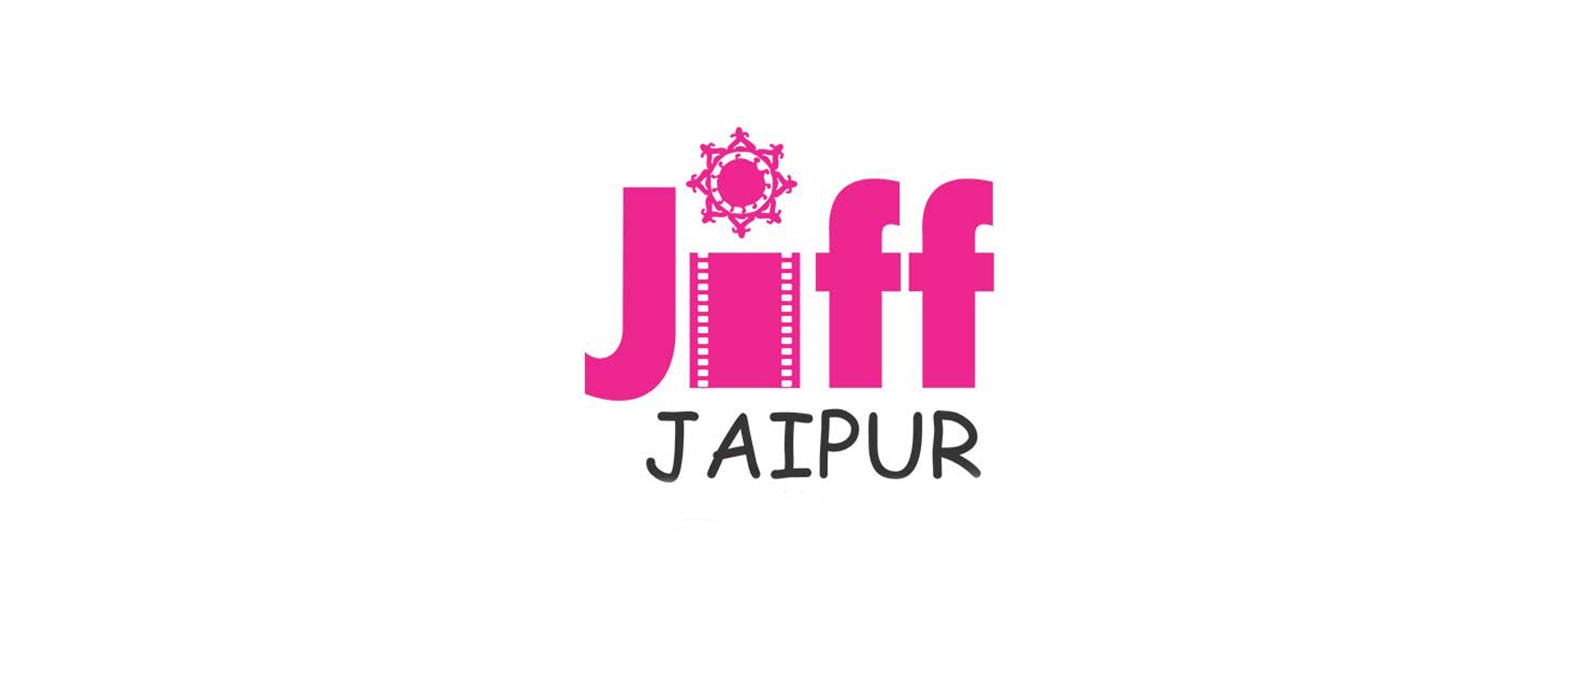 جشنواره بین المللی فیلم جیپور